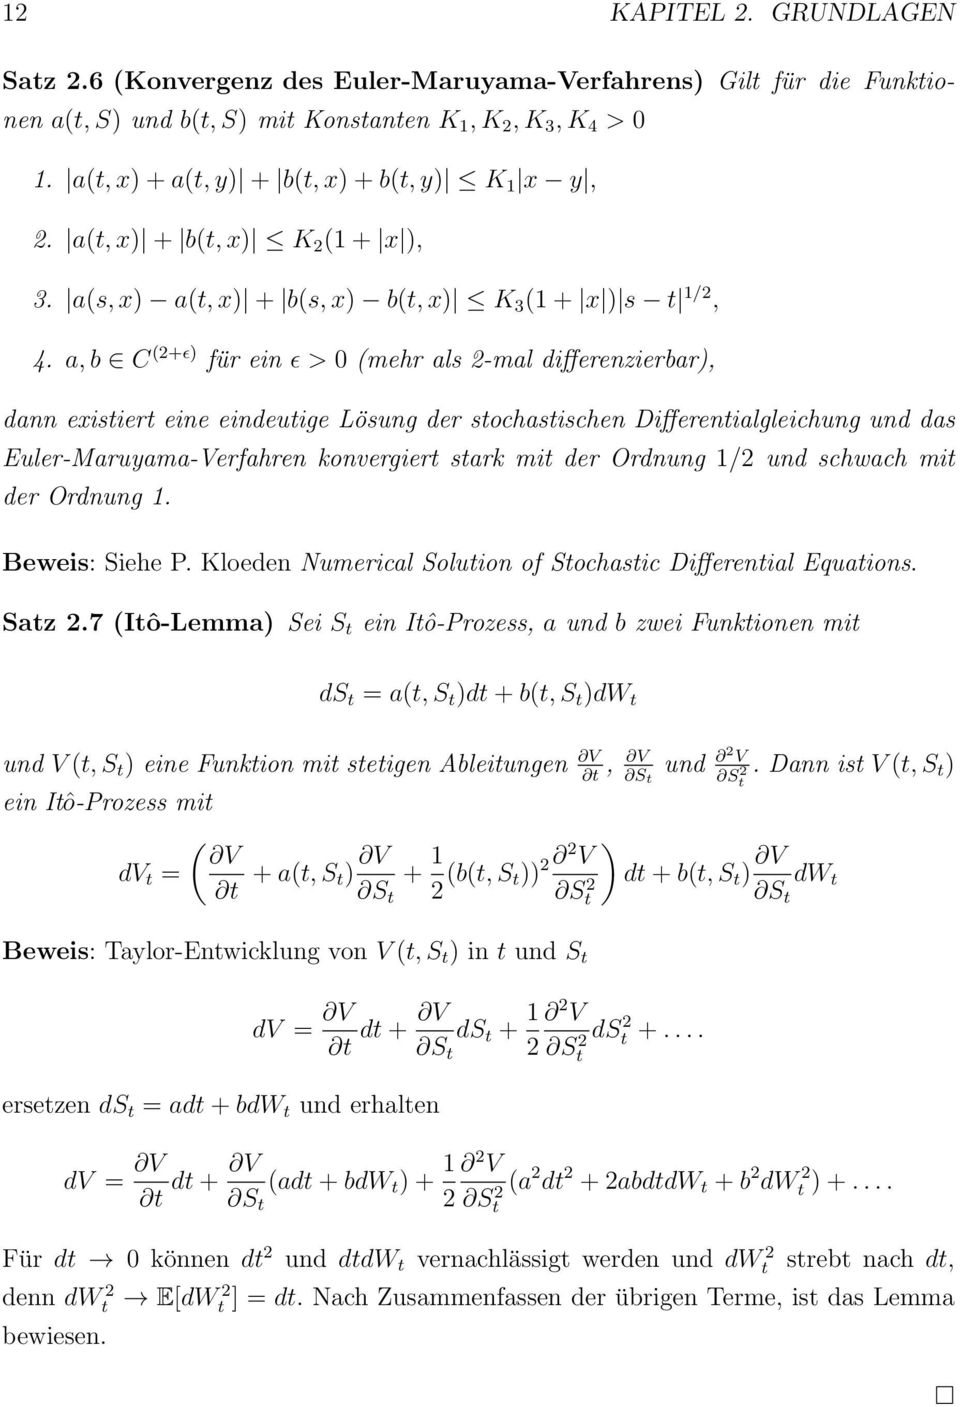 a, b C (2+ɛ) für ein ɛ > 0 (mehr als 2-mal differenzierbar), dann existiert eine eindeutige Lösung der stochastischen Differentialgleichung und das Euler-Maruyama-Verfahren konvergiert stark mit der